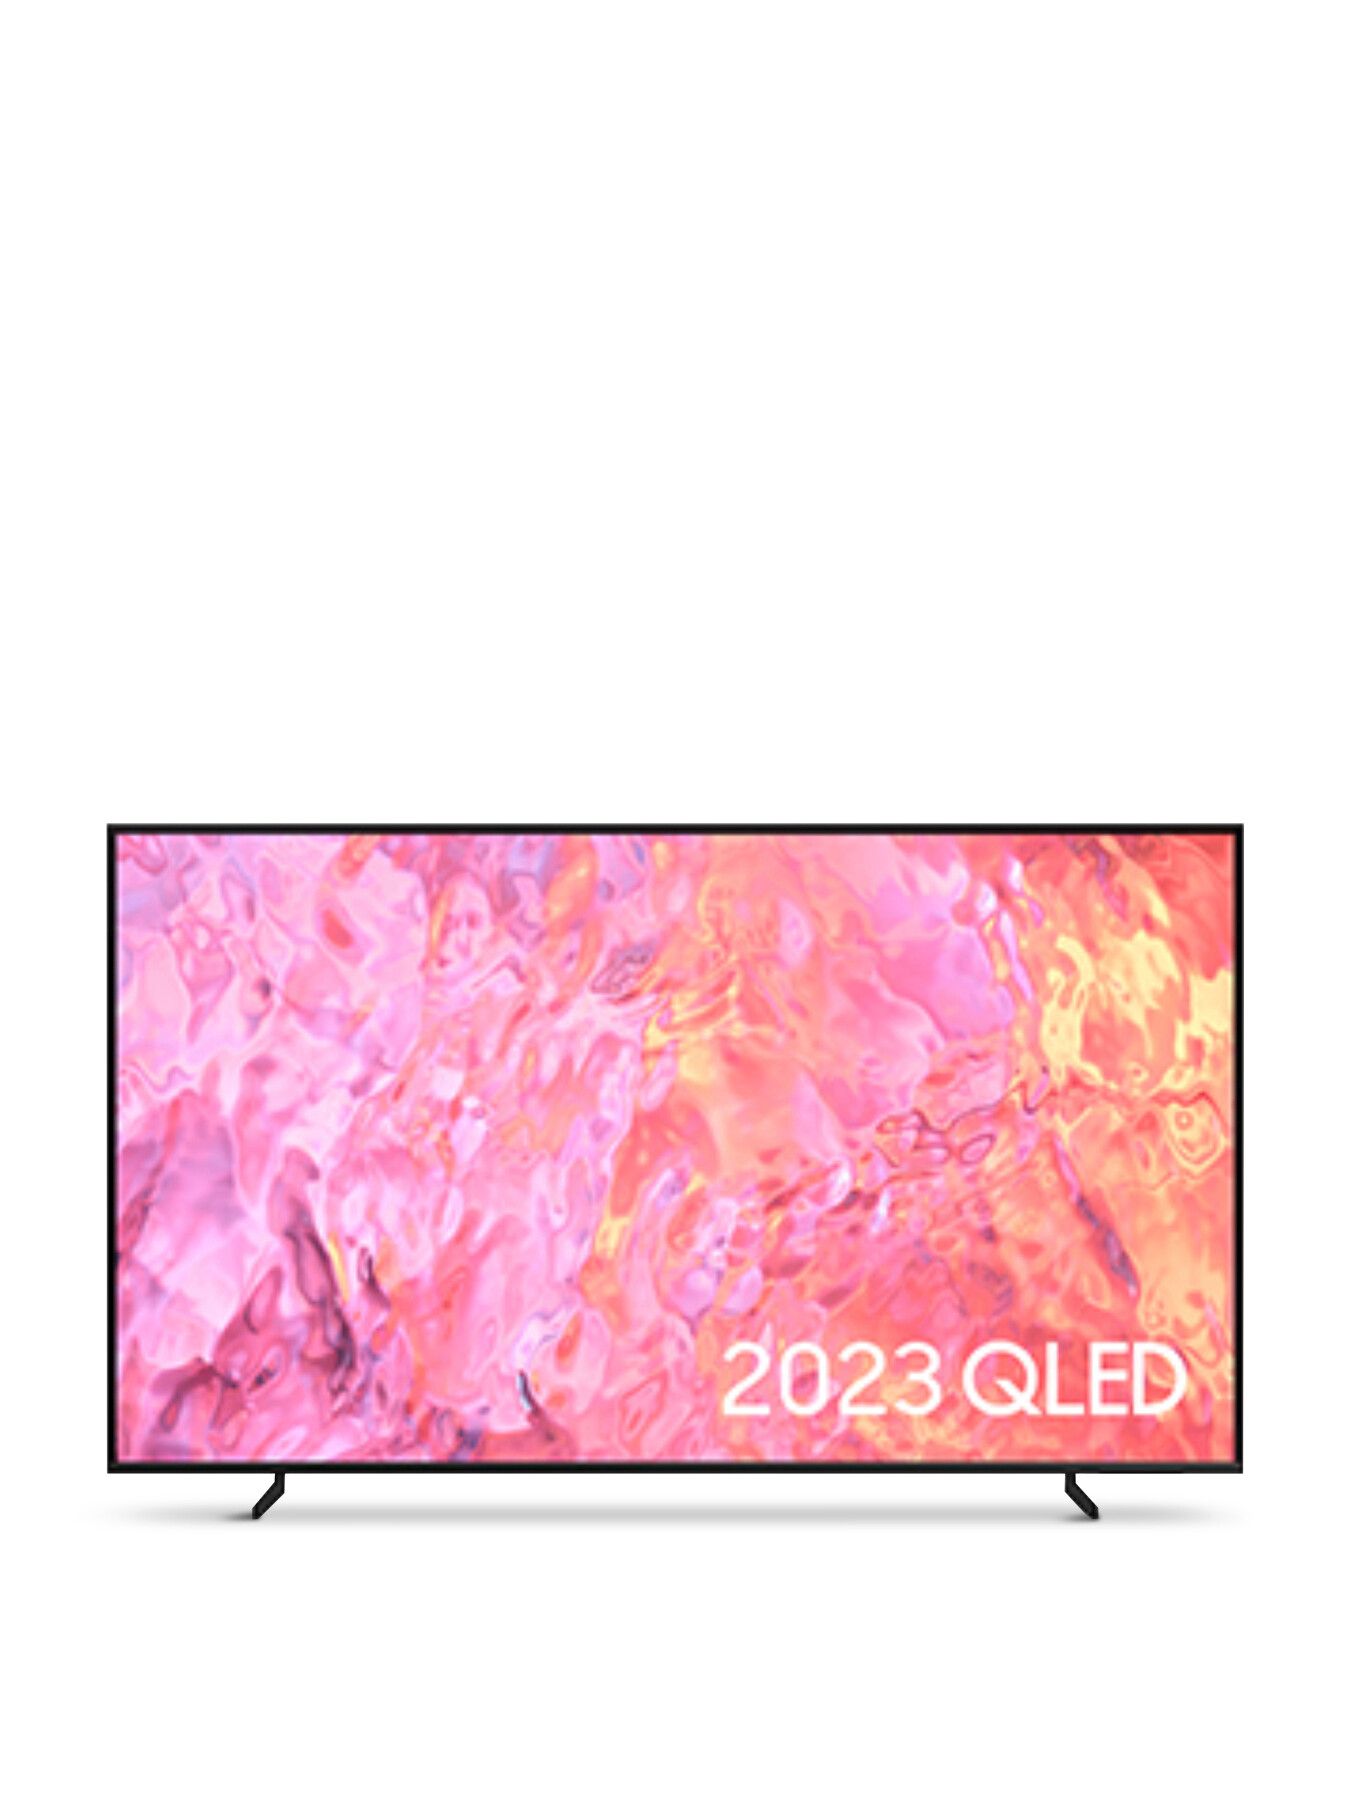 Samsung QE55Q60 QLED HDR 4k Smart TV 55 Inch (2023) | Fenwick